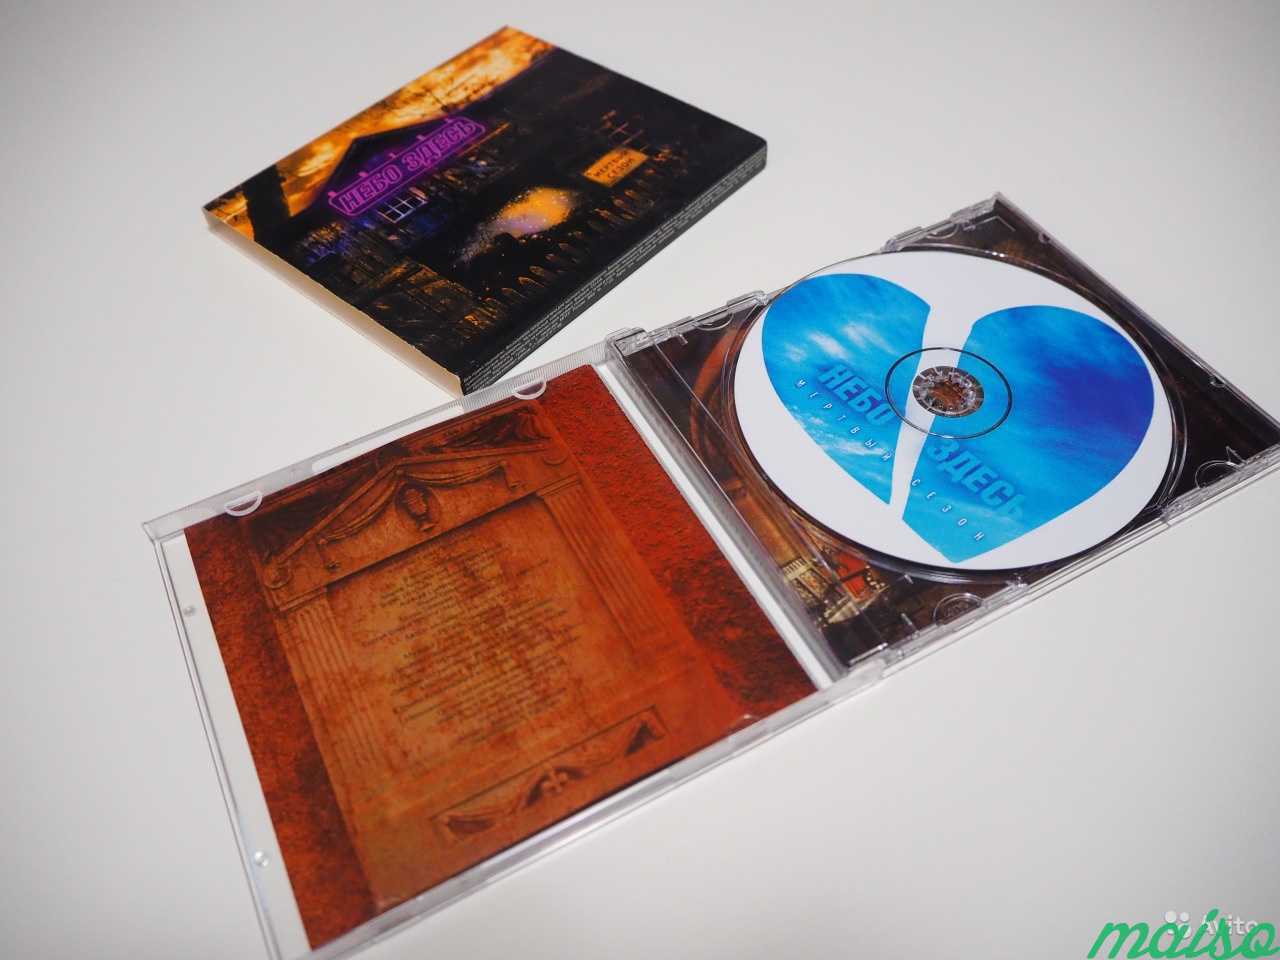 Группа небеса альбом. Альбом CD группы Demo. Компакт диски группы телевизор фирмы геометрия.